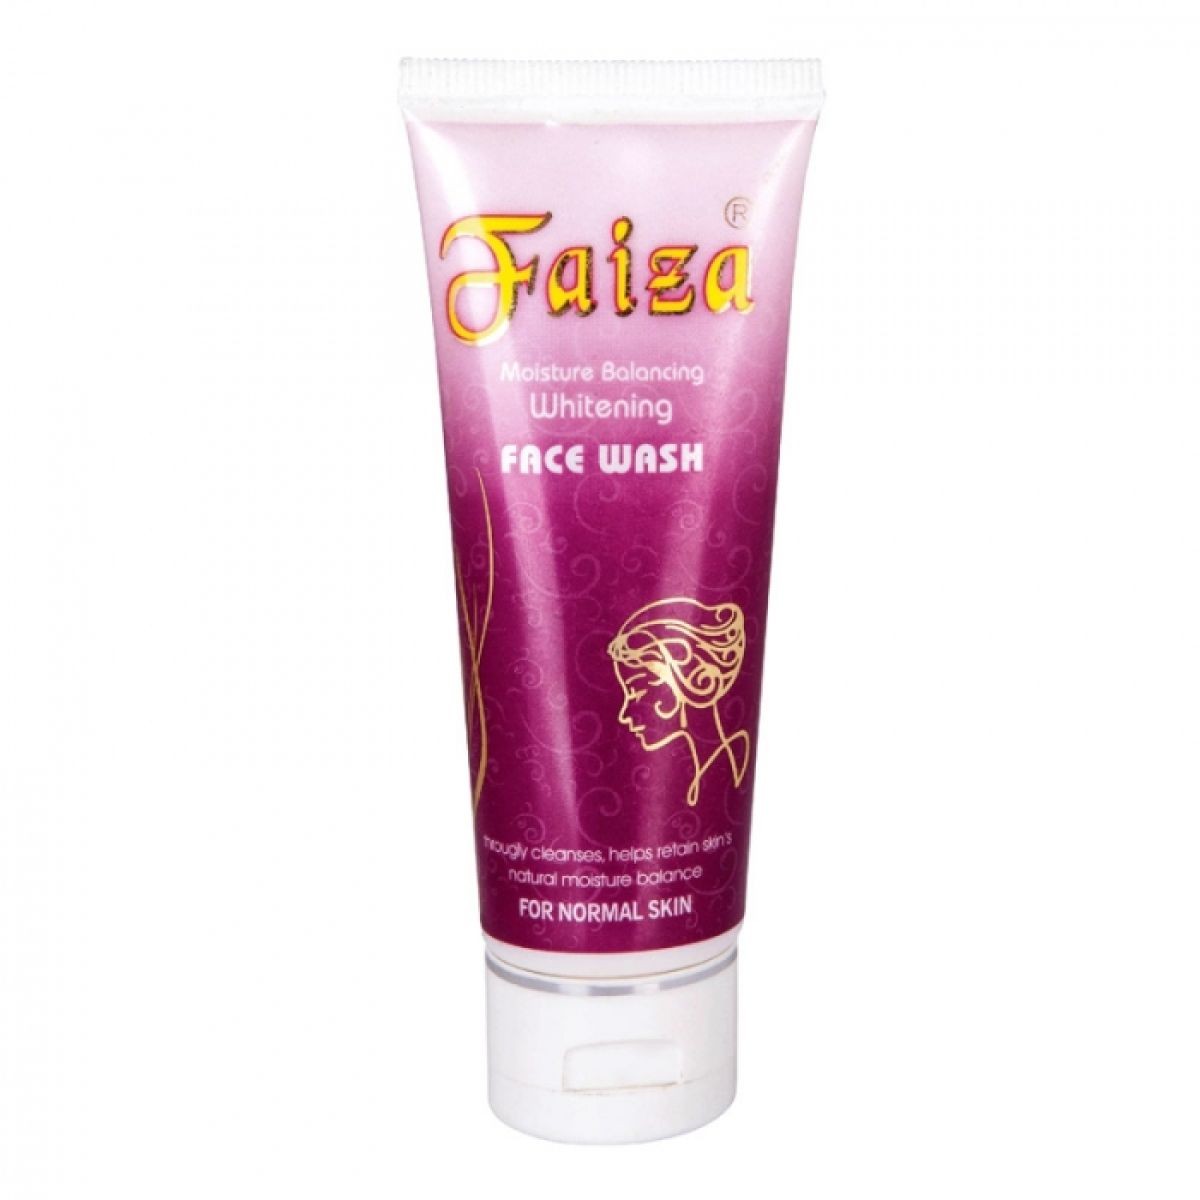 Faiza Face wash for normal skin